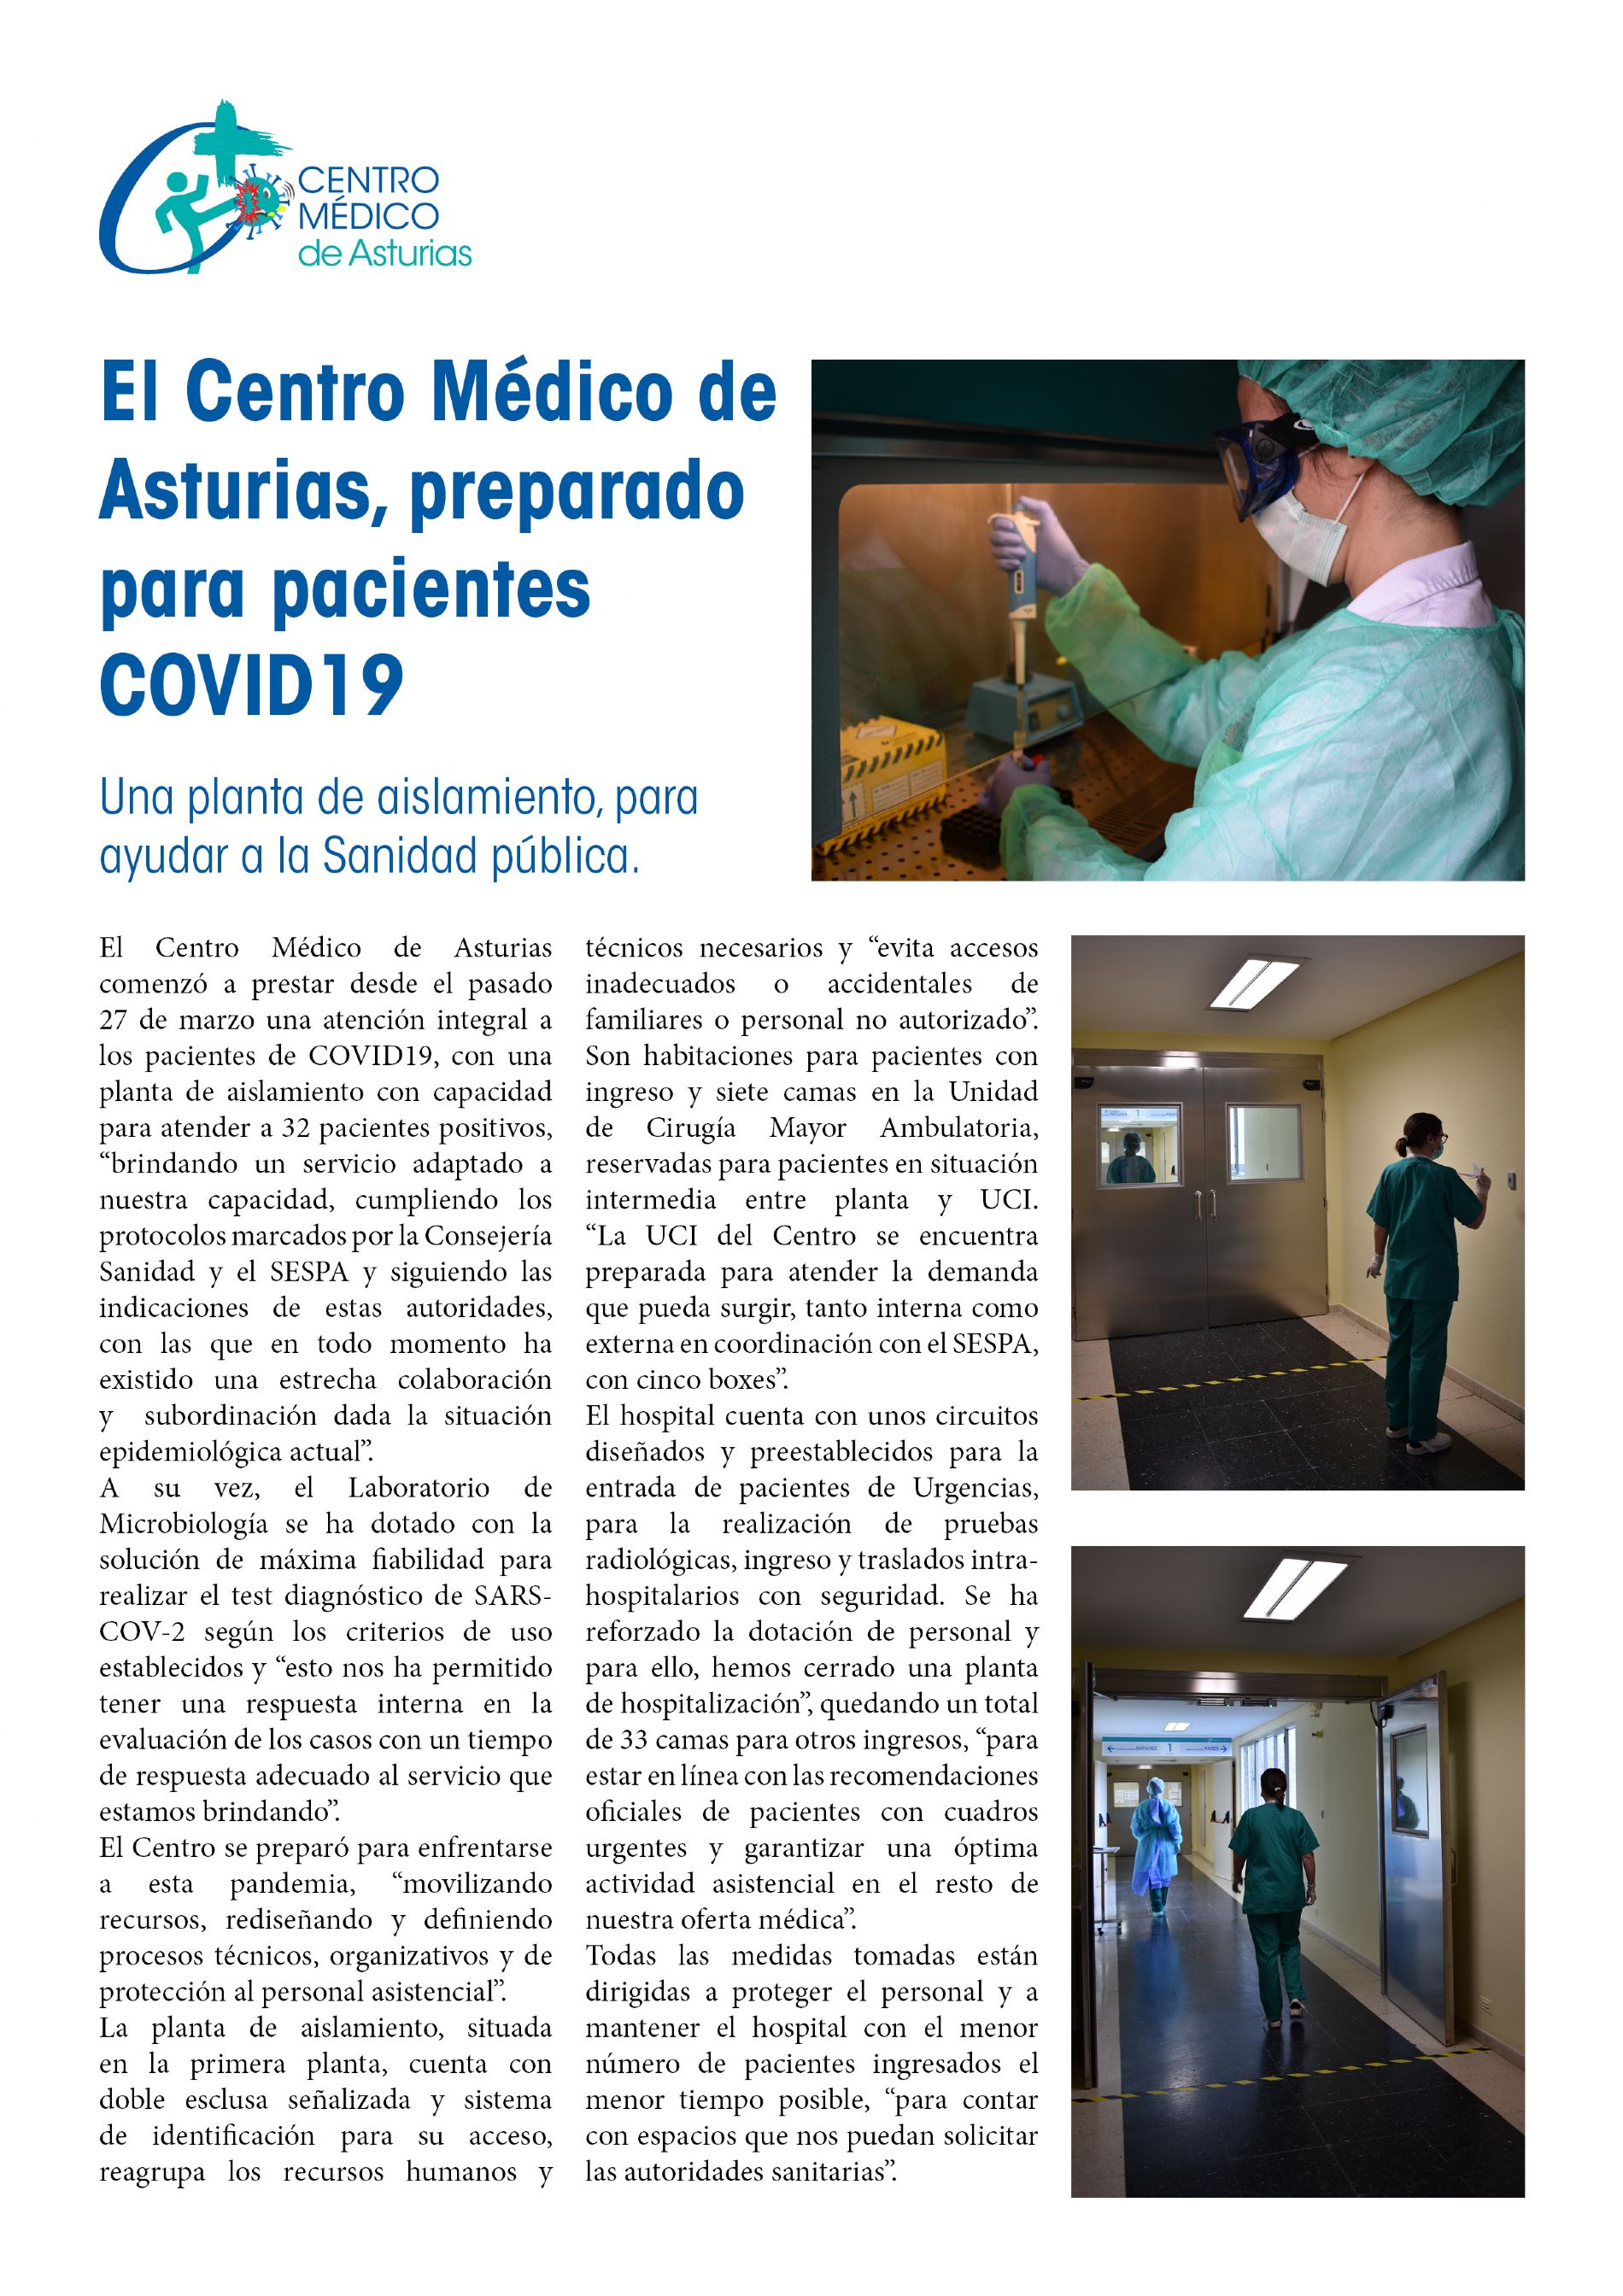 El Centro Mdico de Asturias, preparado para pacientes COVID19